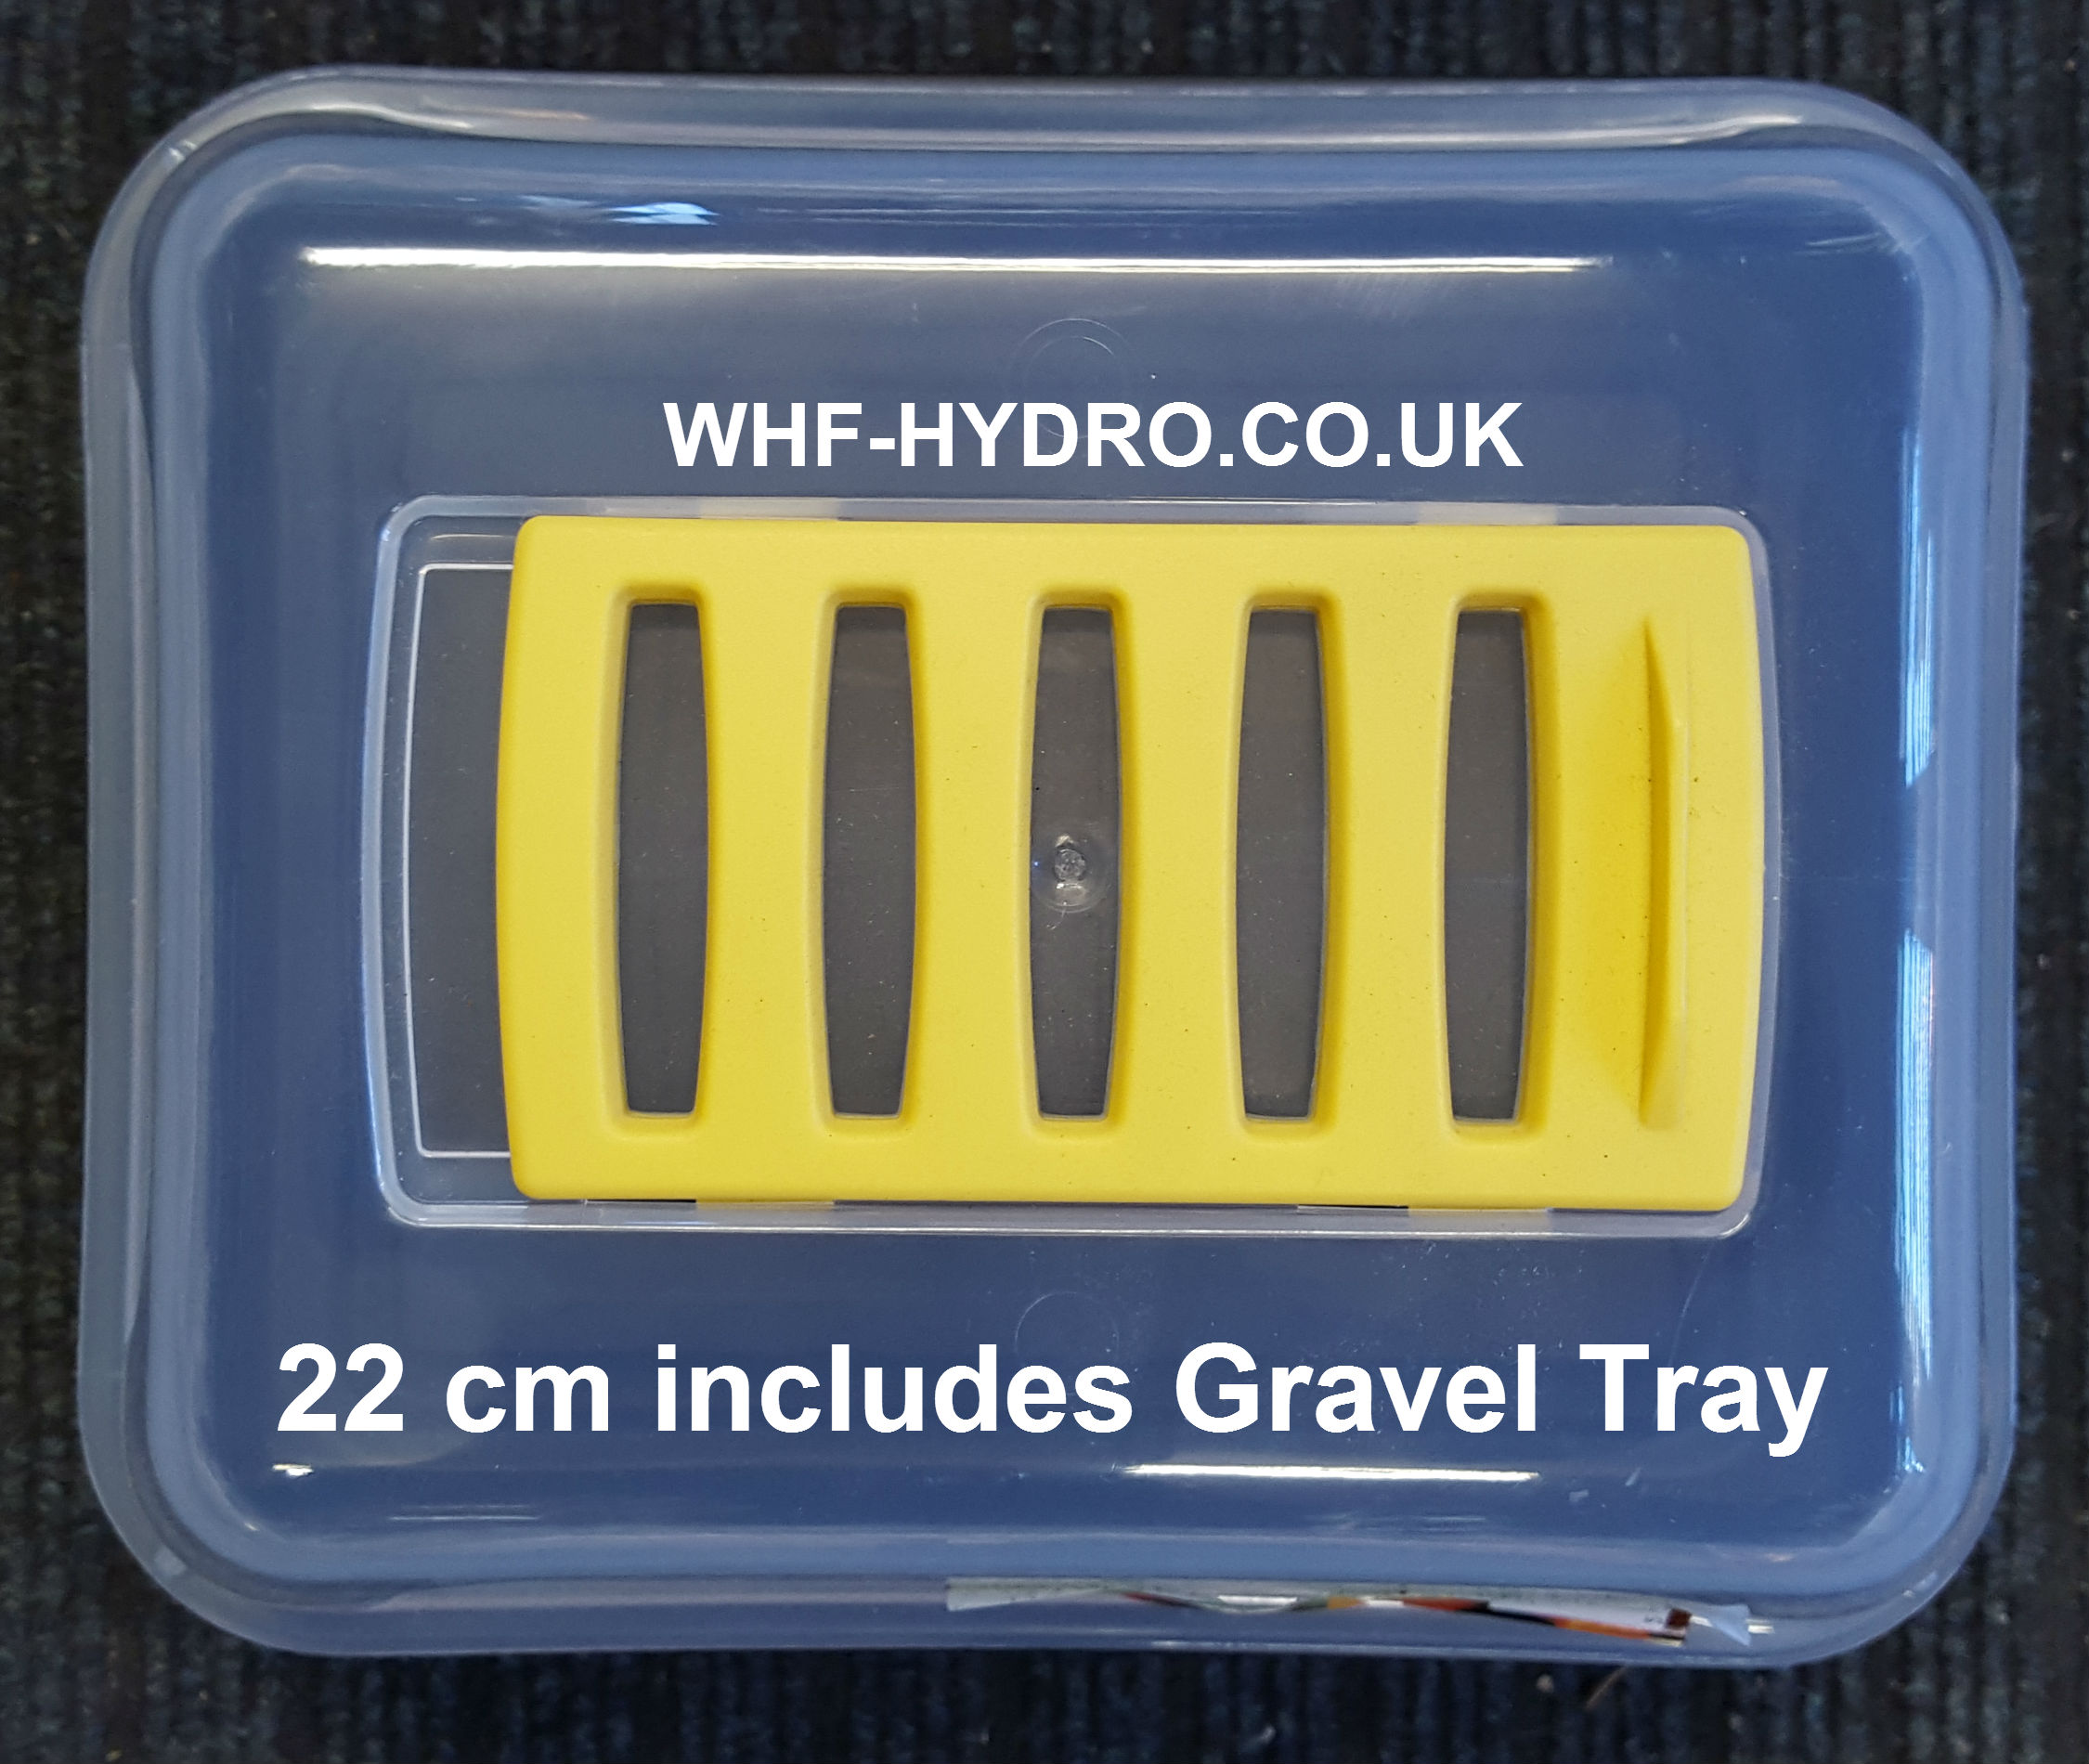 Propagator 22 cm includes Gravel Tray